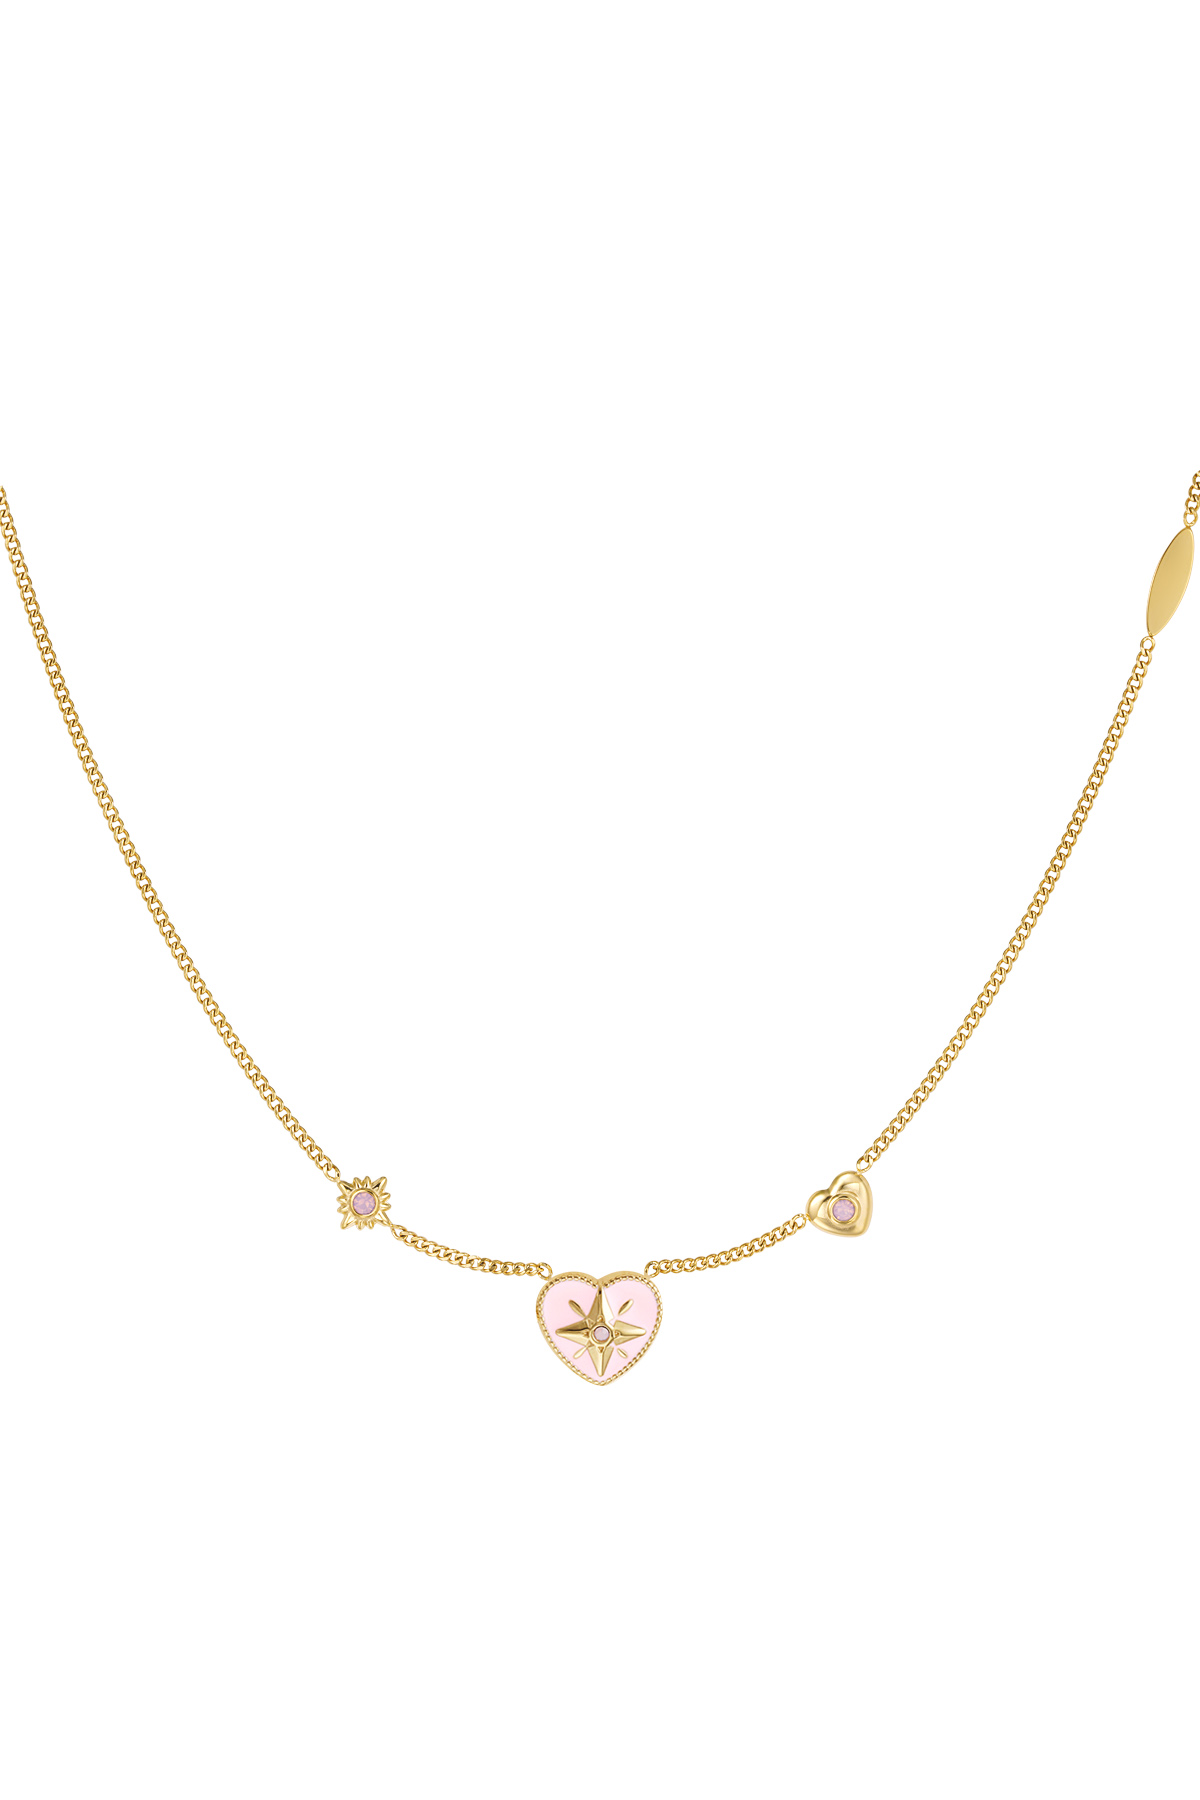 Halskette Herz mit Steinen - Gold/Rosa 